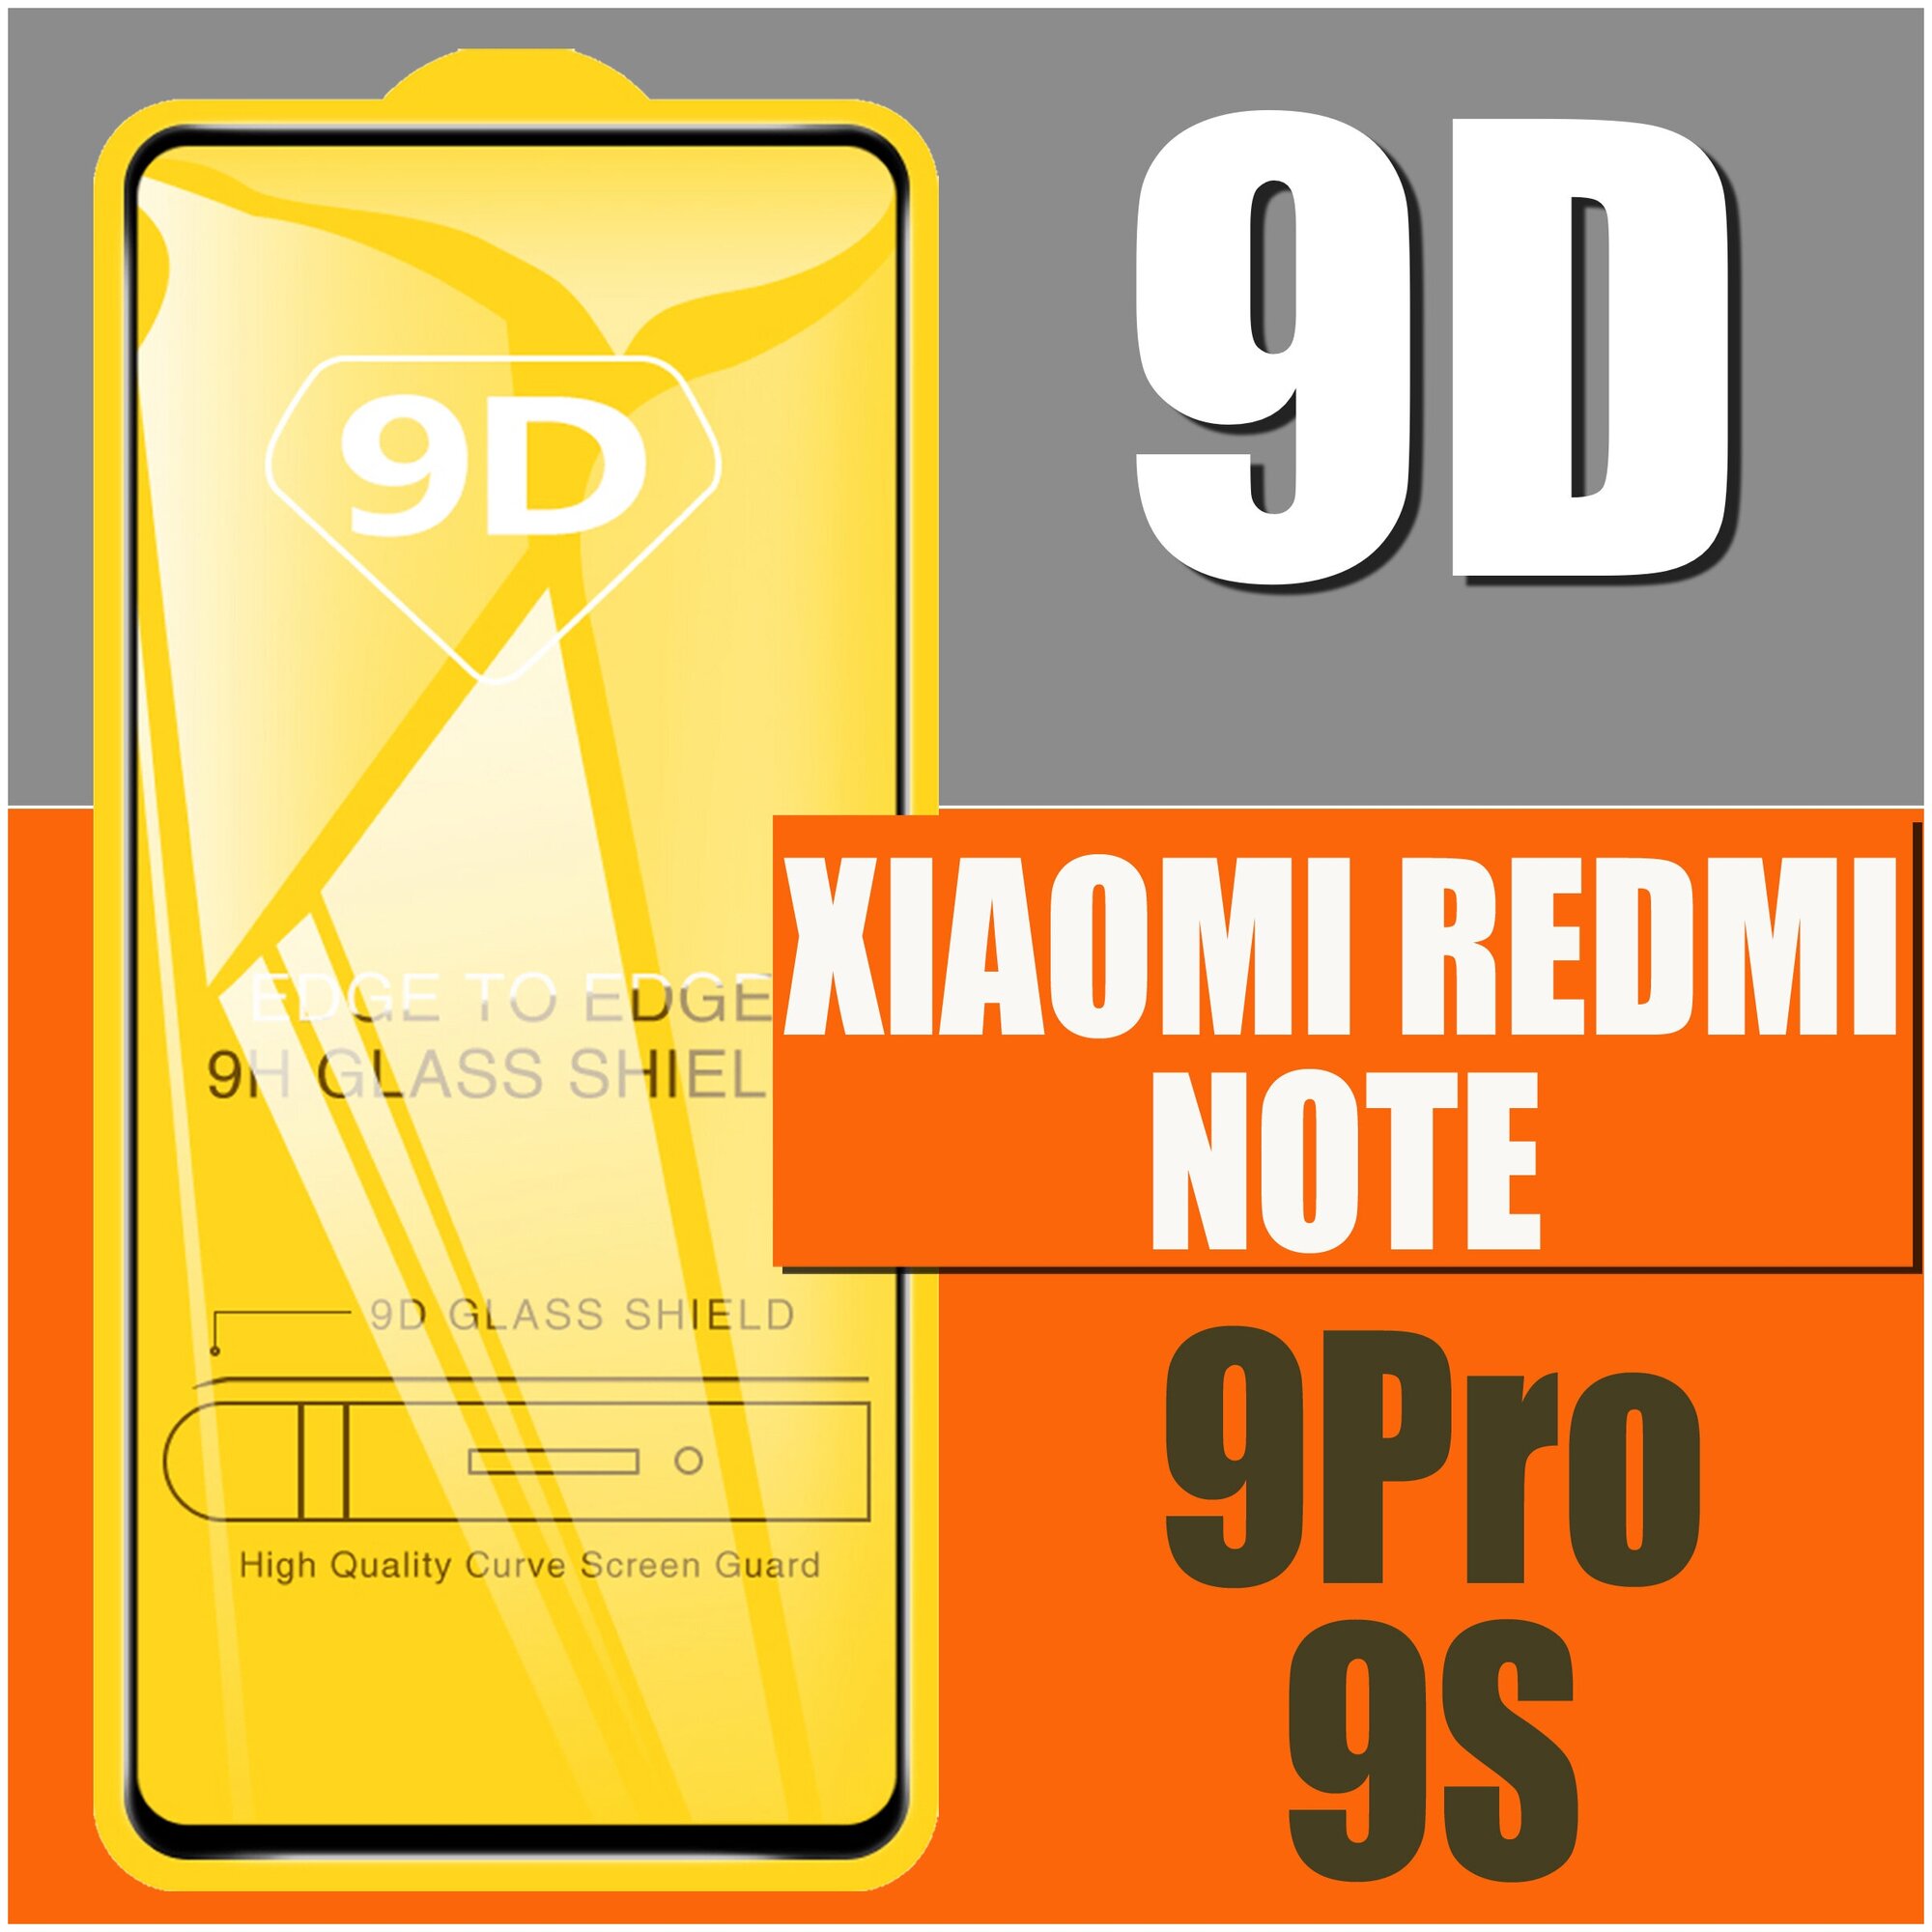 Защитное стекло для Xiaomi Redmi NOTE 9 PRO / 9S (2020) / для Ксиаоми / 9D на весь экран